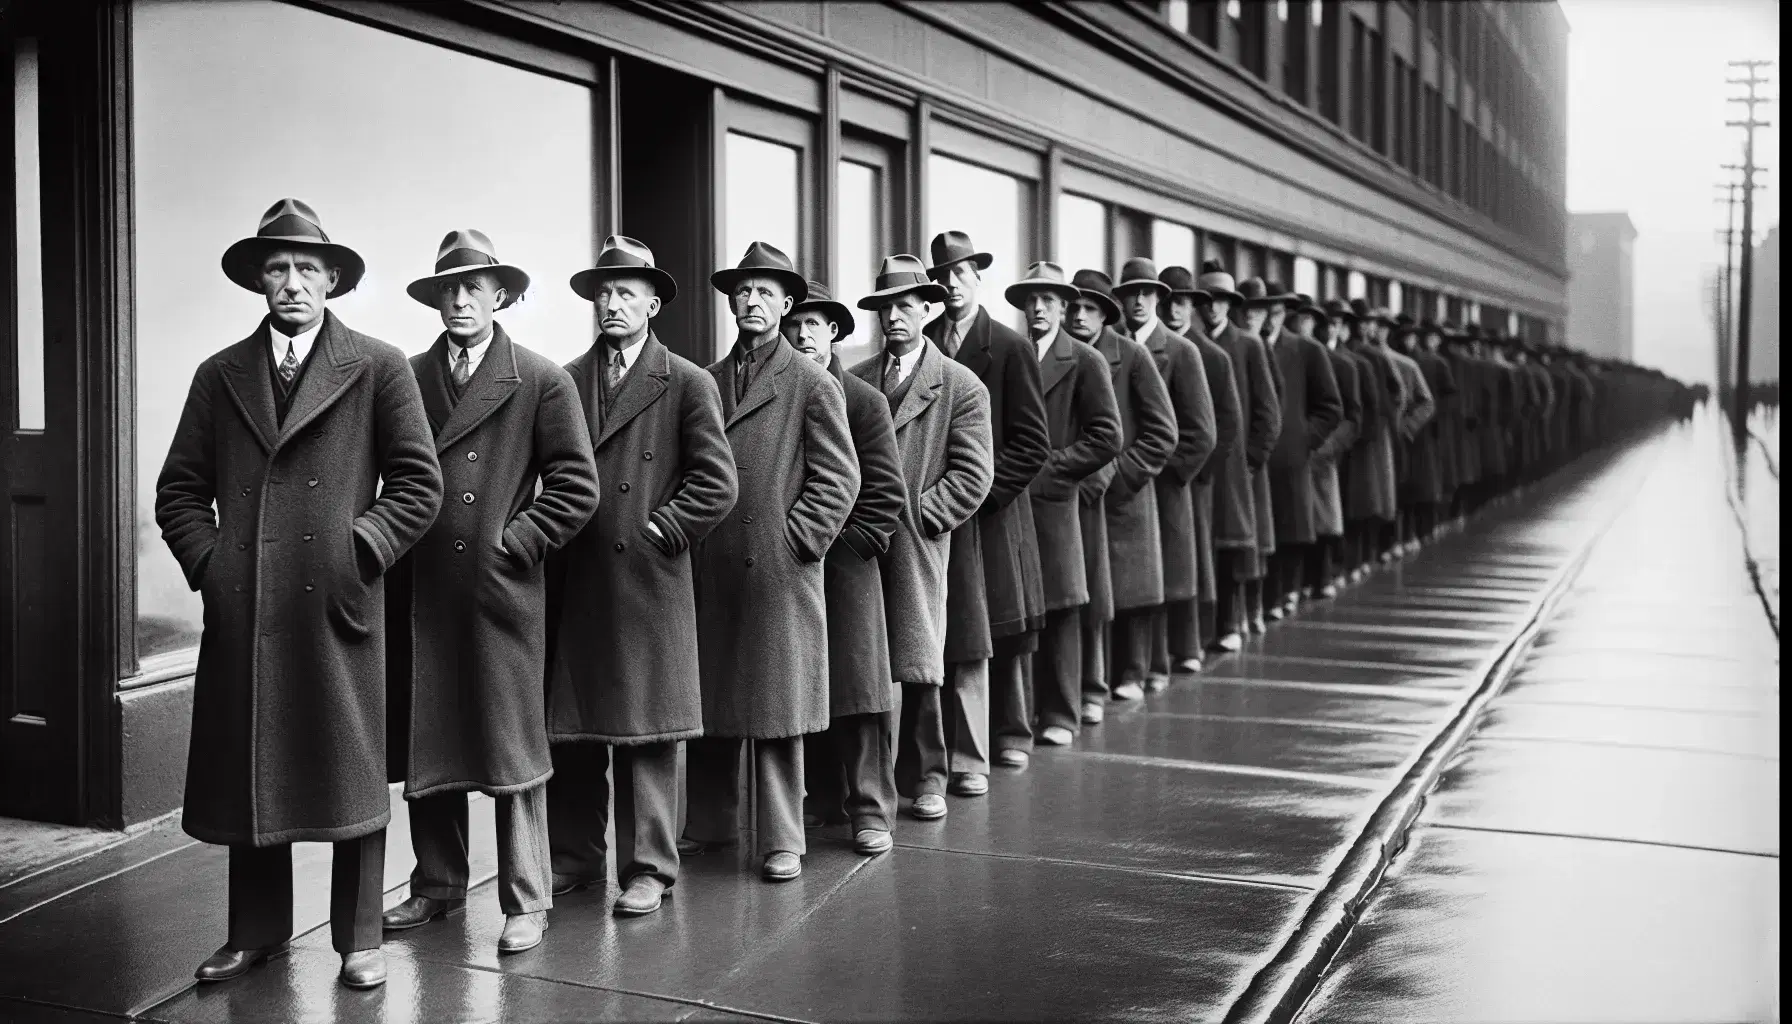 Uomini in fila durante la Grande Depressione, con cappelli a tesa larga e cappotti lunghi, esprimono attesa e preoccupazione su marciapiede.